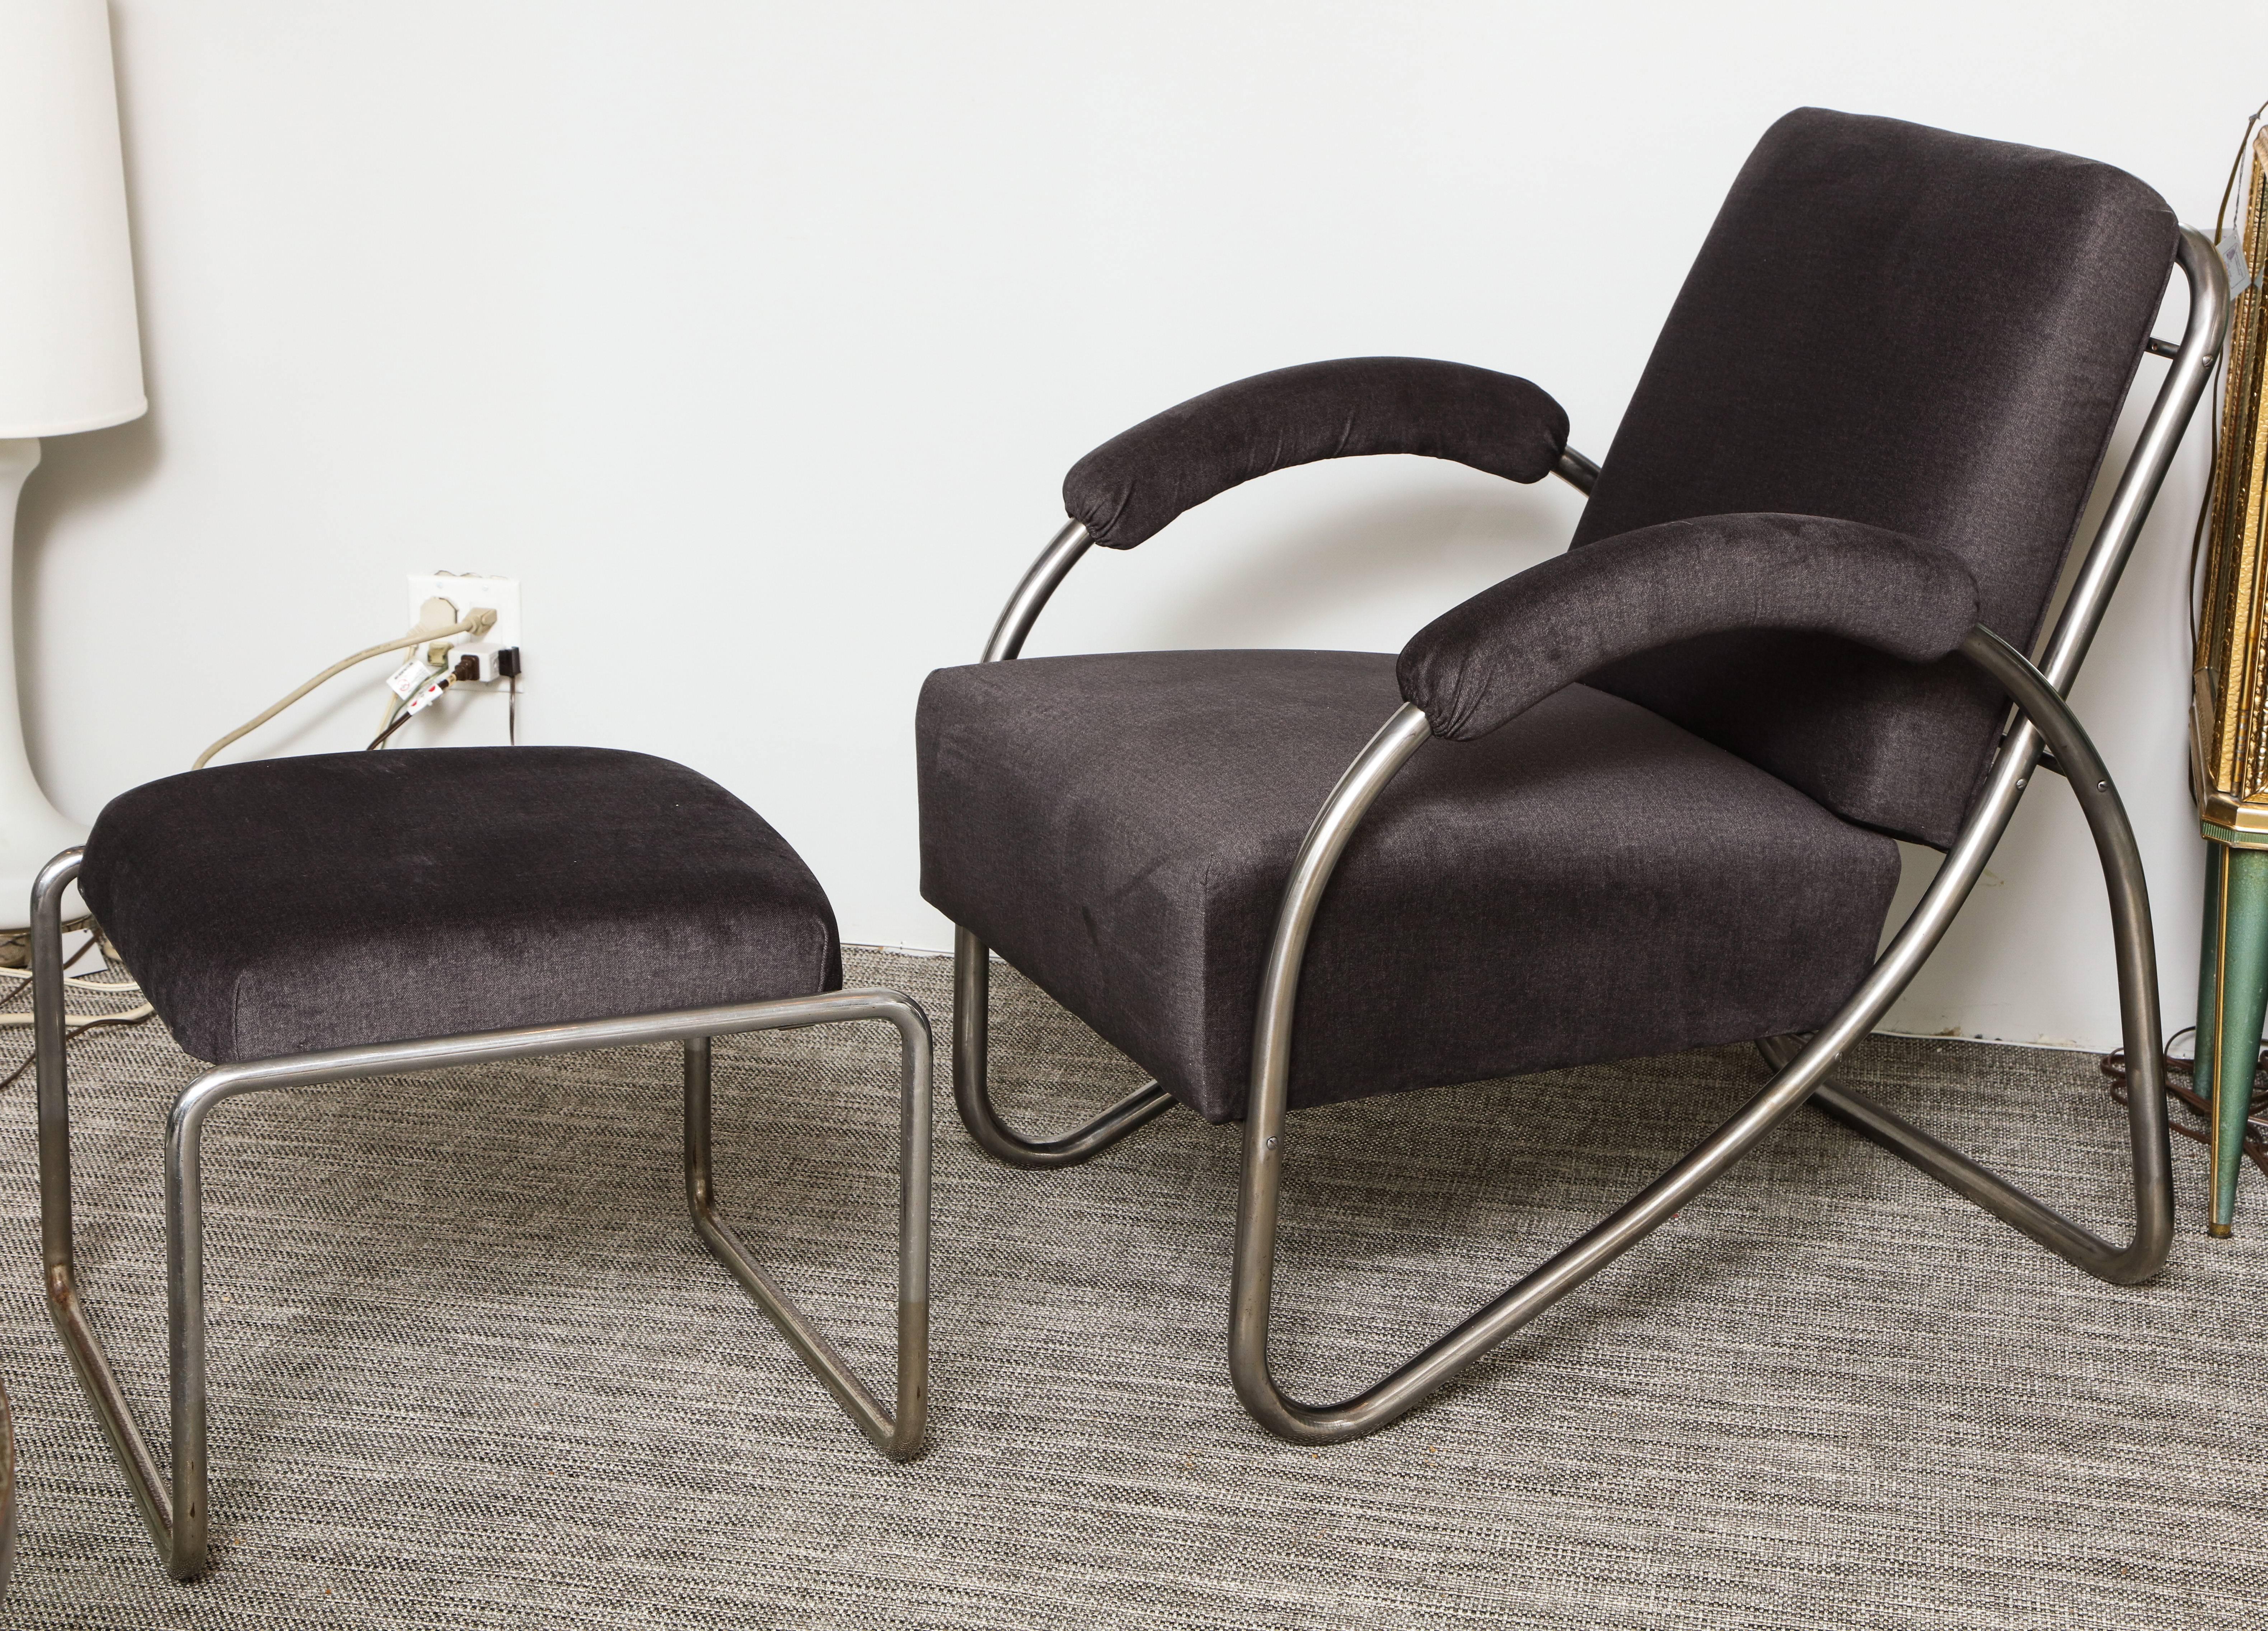 Ein fantastisches Paar Art-Déco-Sessel aus Stahlrohr mit einem Design, das wie eine durchgehende Linie erscheint. Sie sind sehr bequem und haben eine leichte Federung, die auf das hervorragende Design zurückzuführen ist.  Im Desta Stahl Mobel